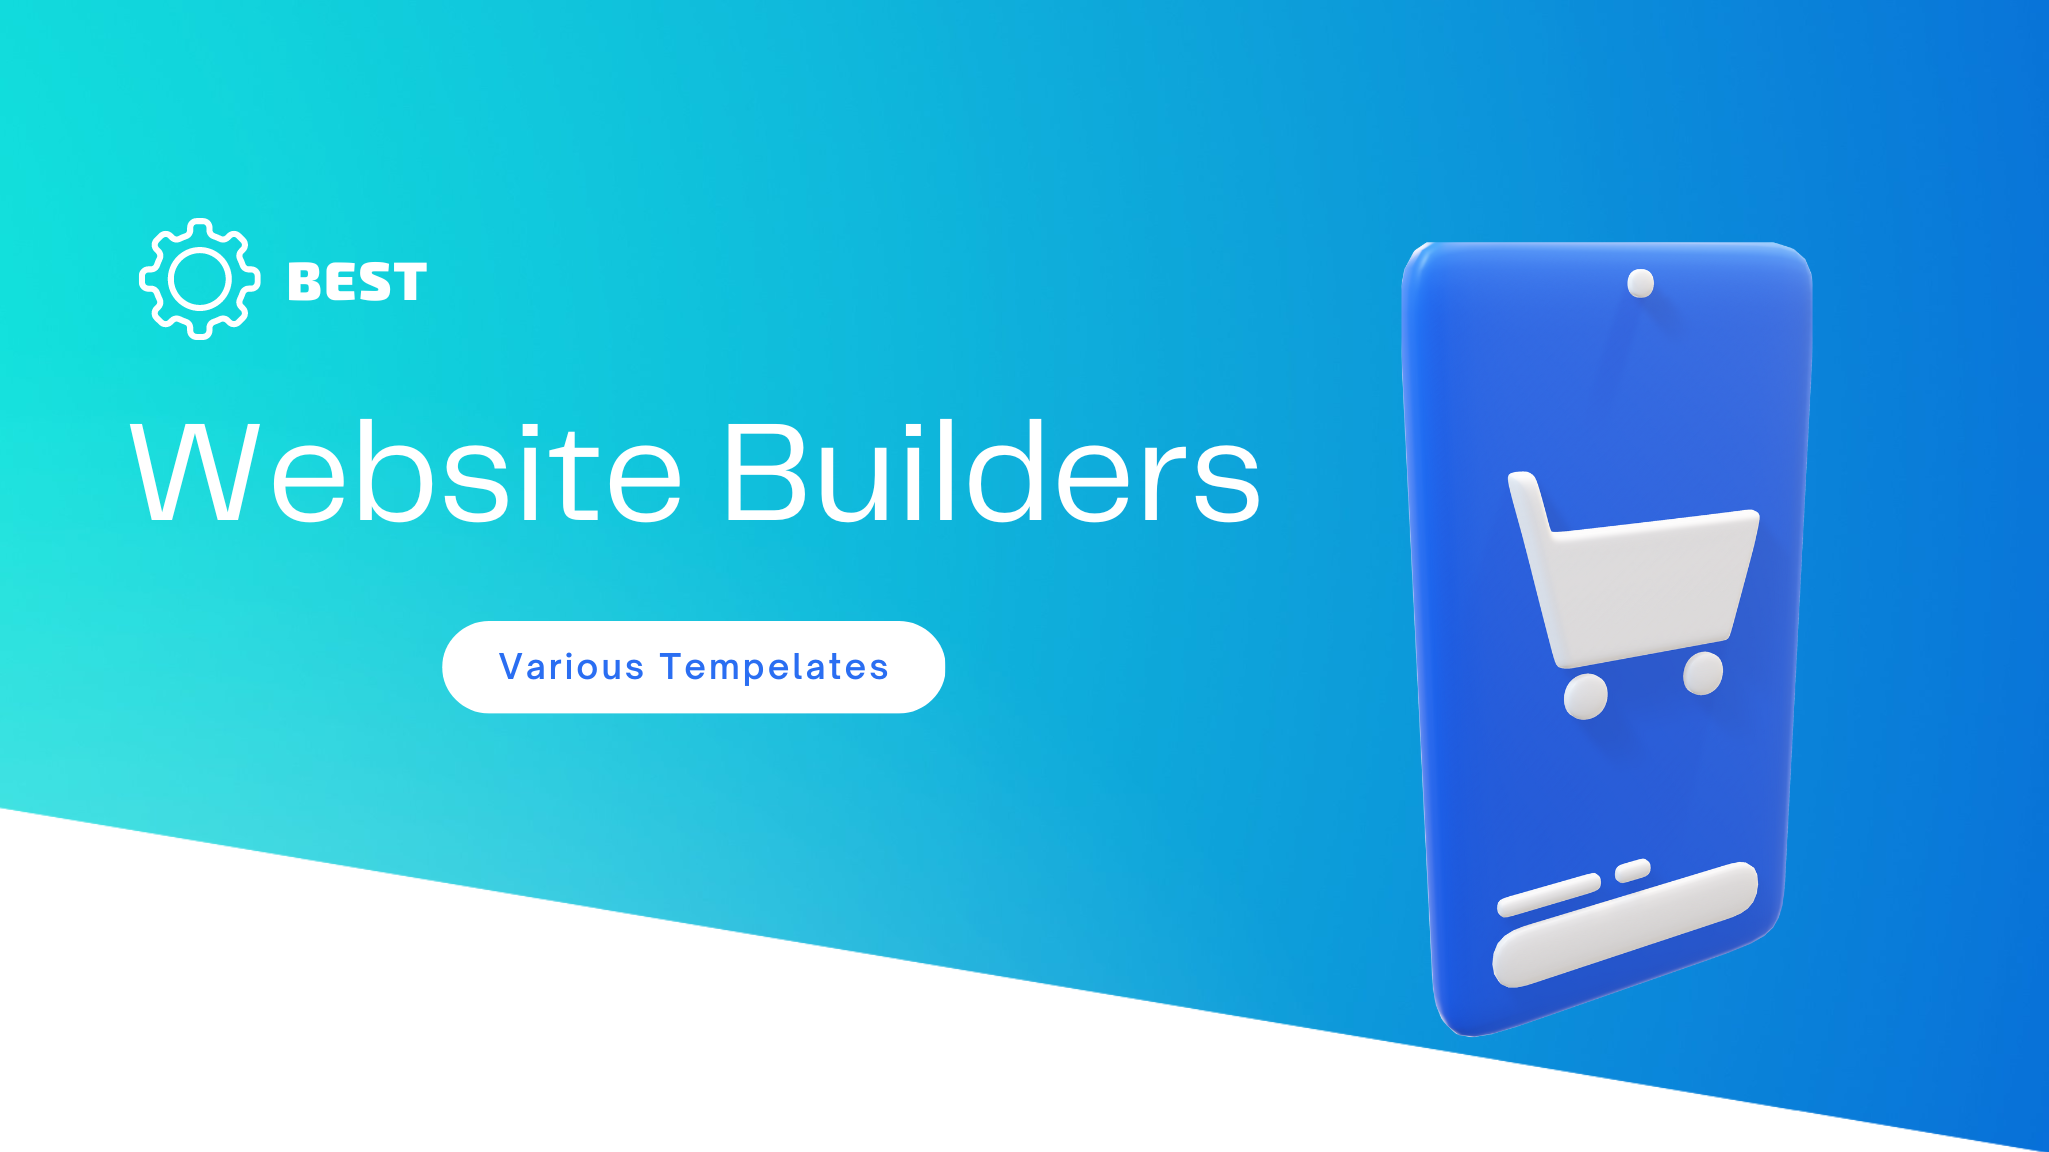 Best website builders, website builder